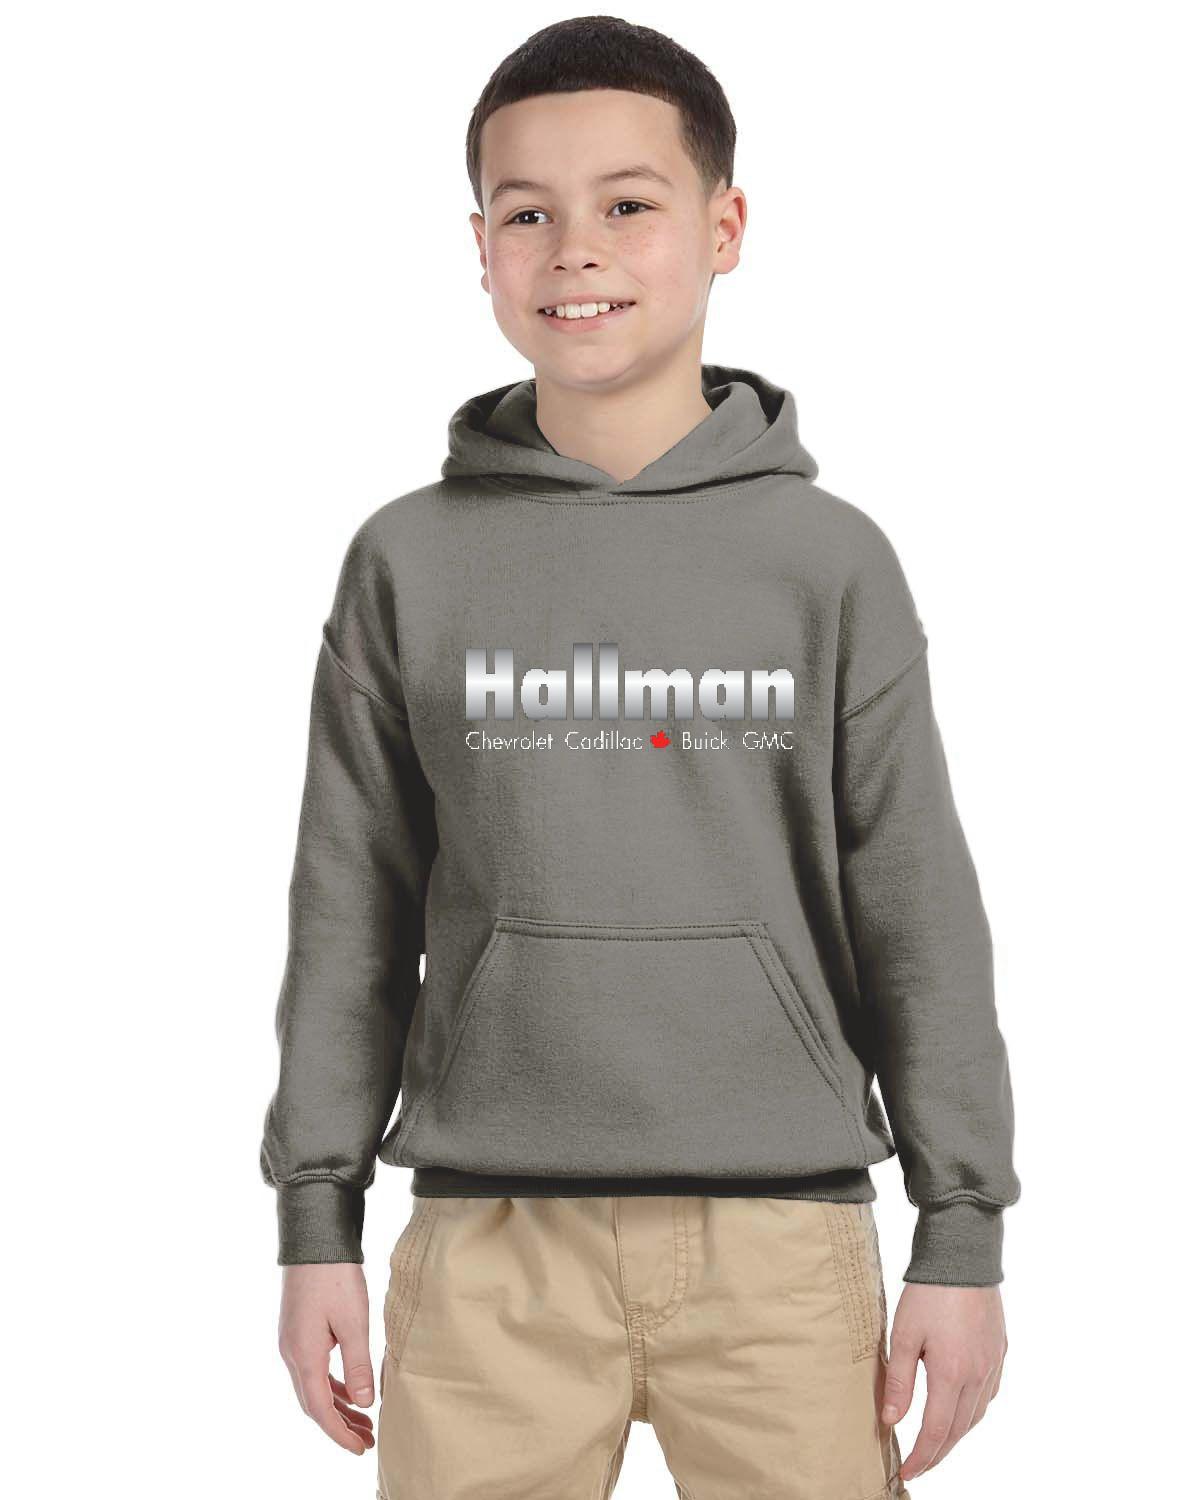 Hallman Kid's Hoodie